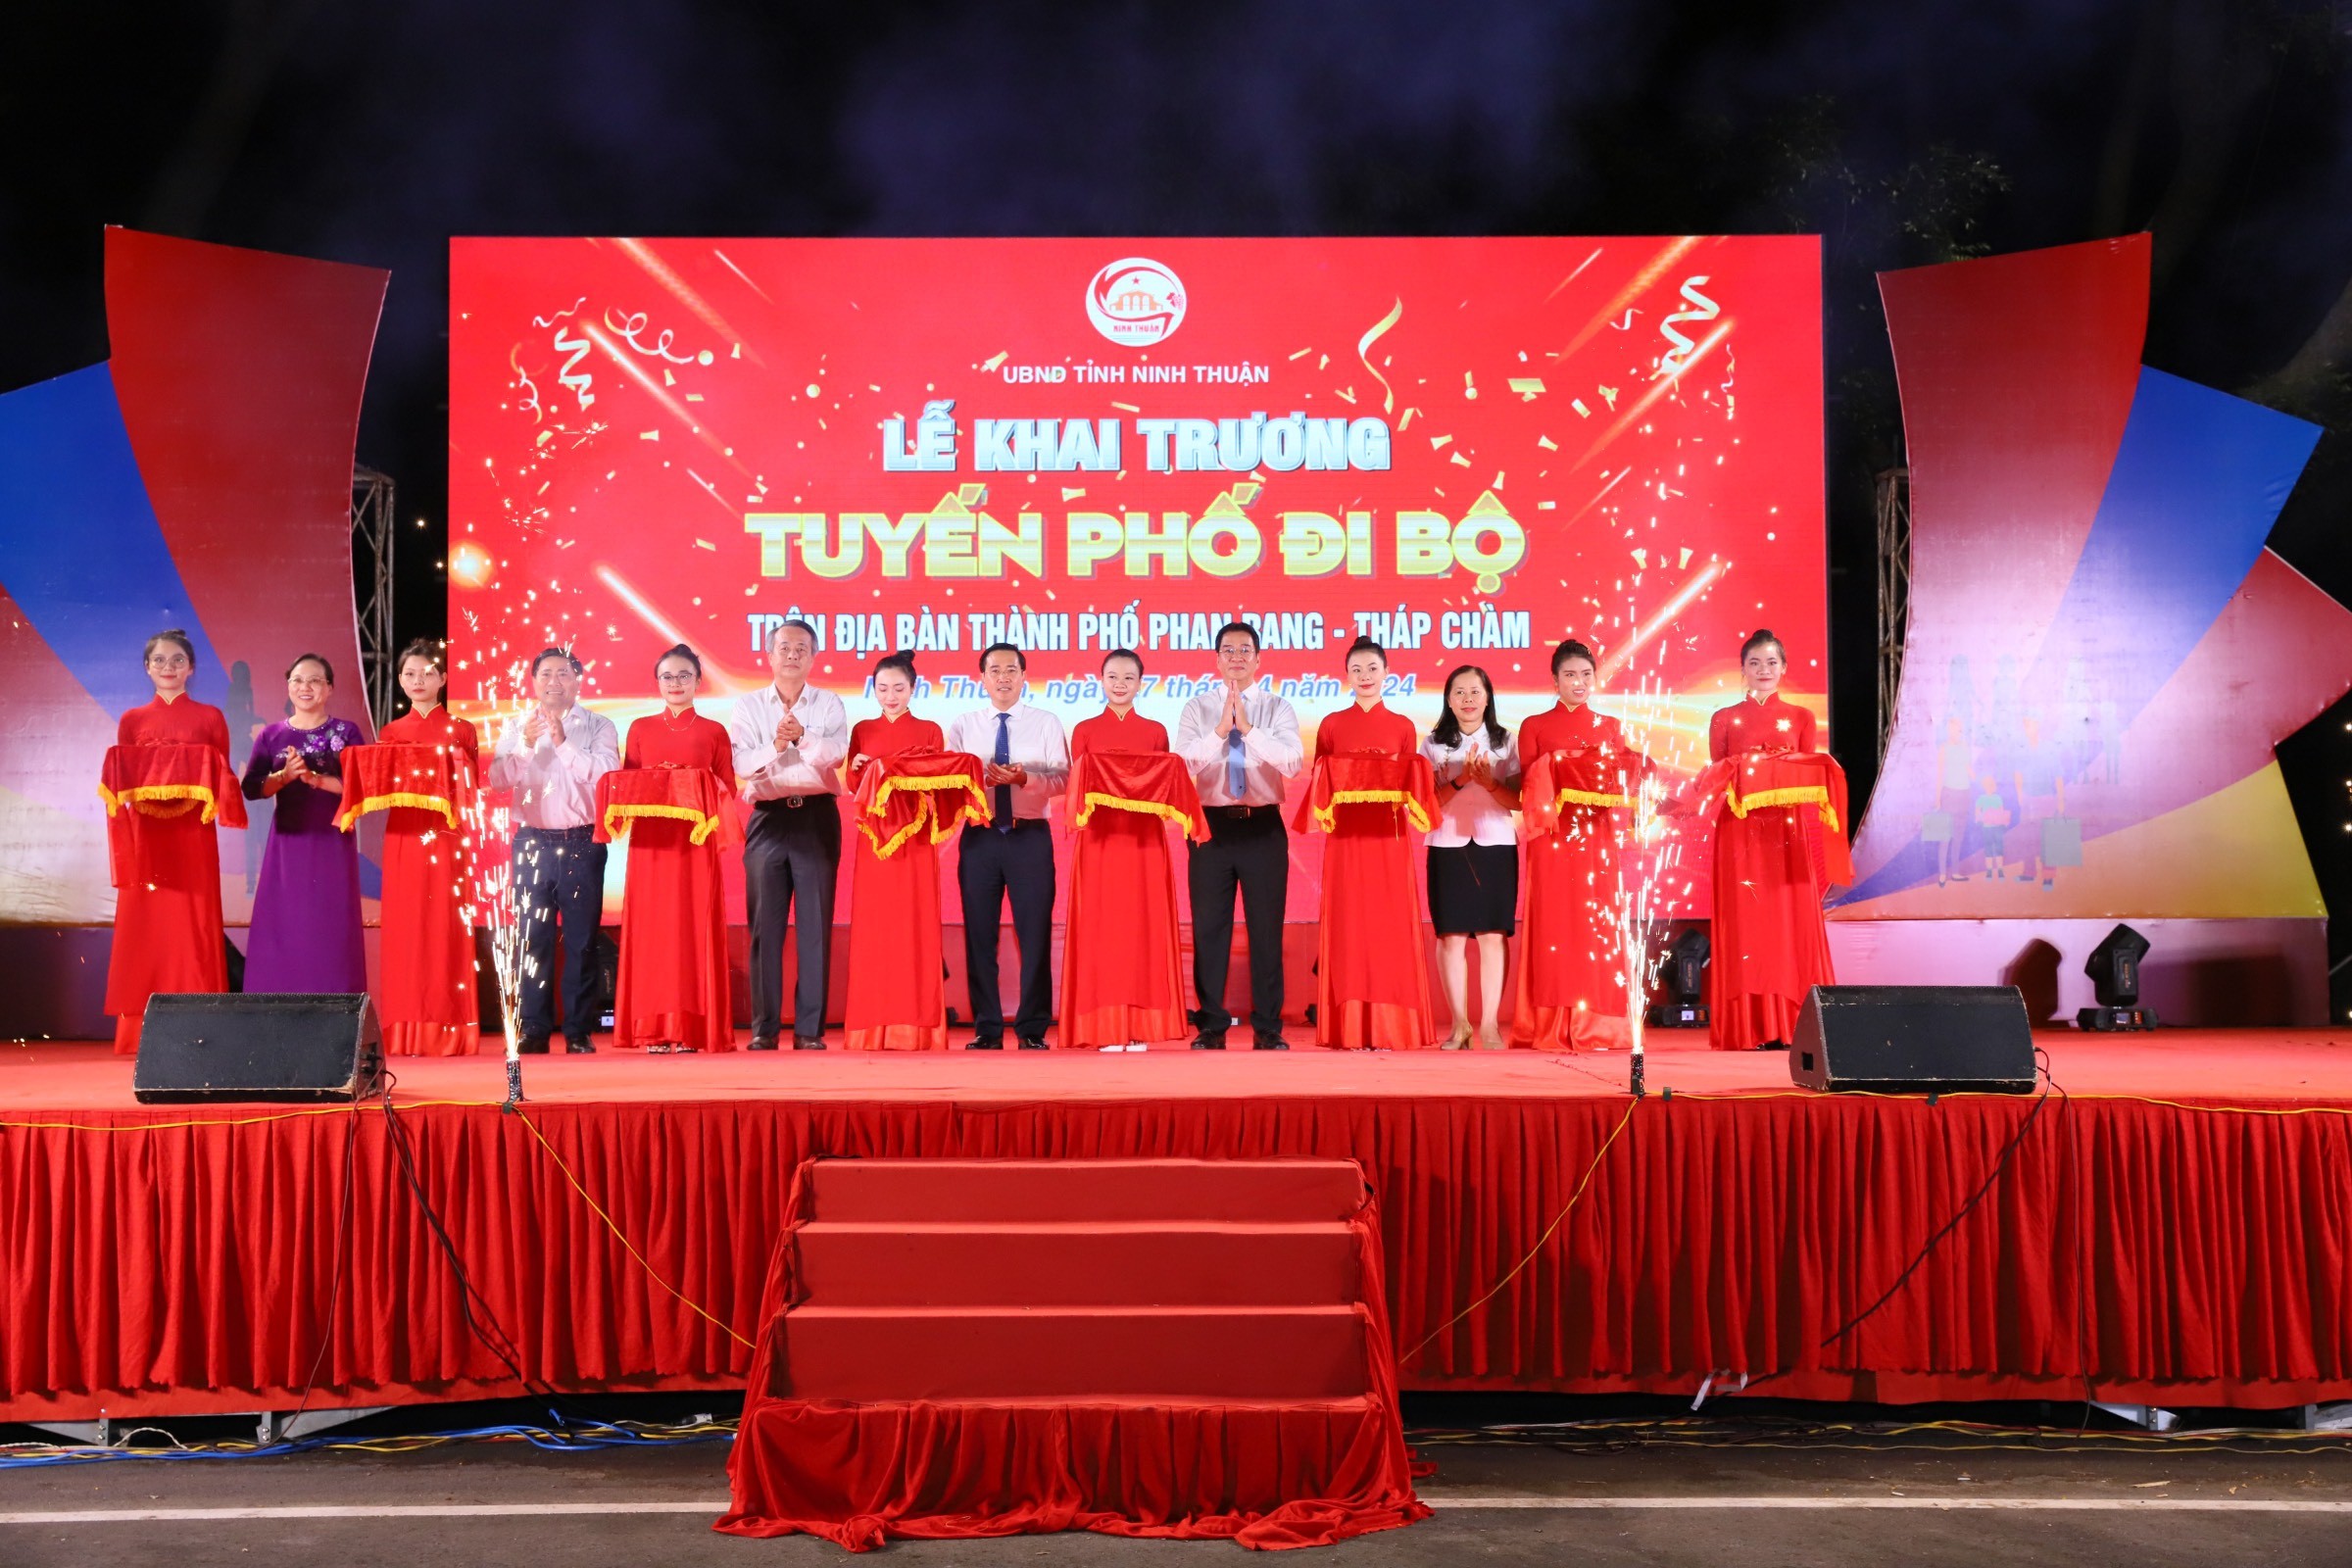 Ninh Thuận khai trương phố đi bộ tại TP. Phan Rang - Tháp Chàm